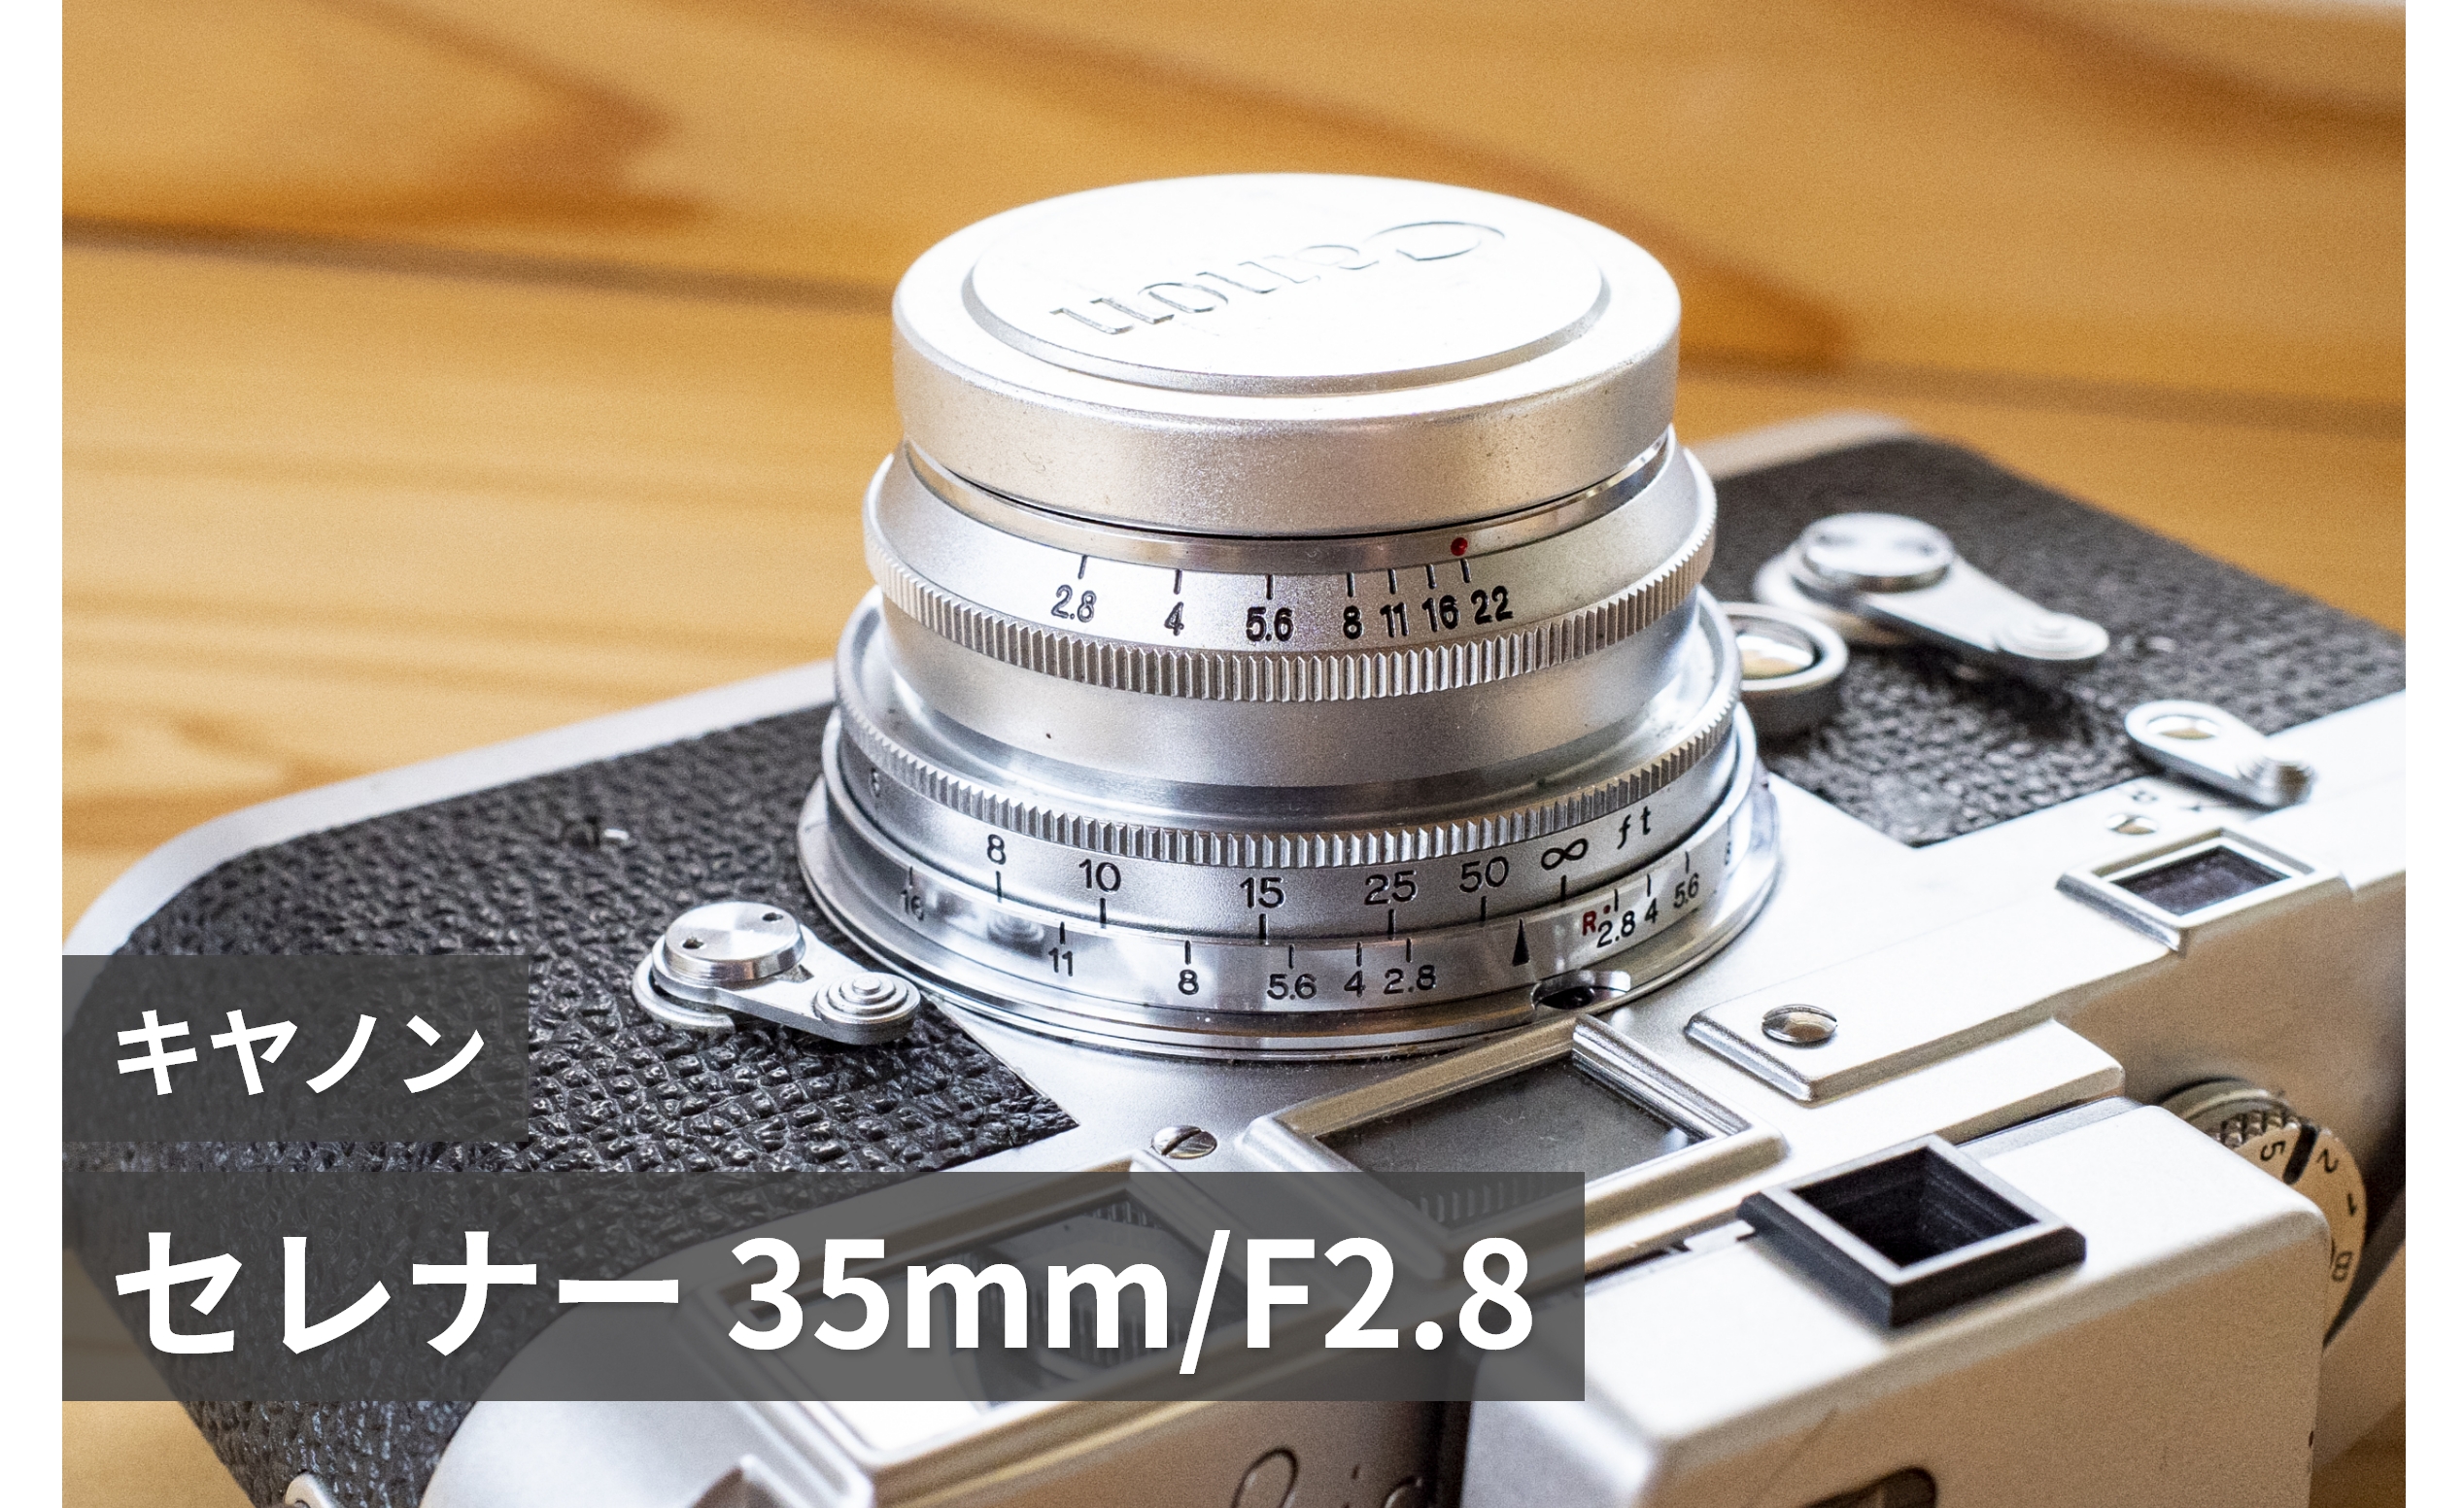 キヤノン セレナー 35mm/F2.8 